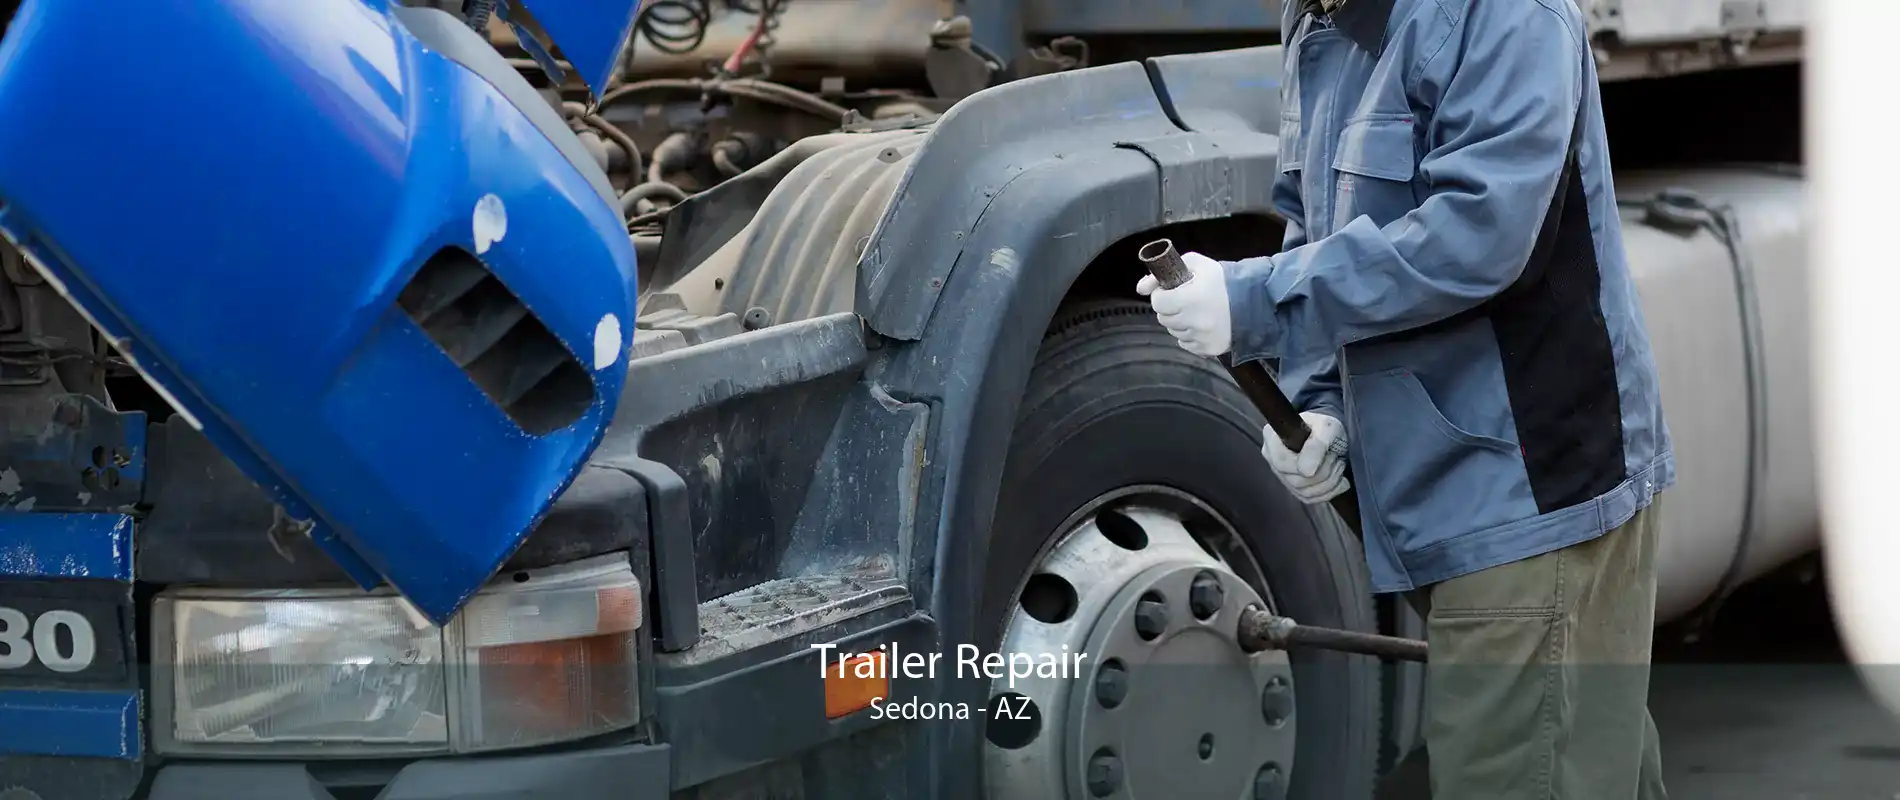 Trailer Repair Sedona - AZ